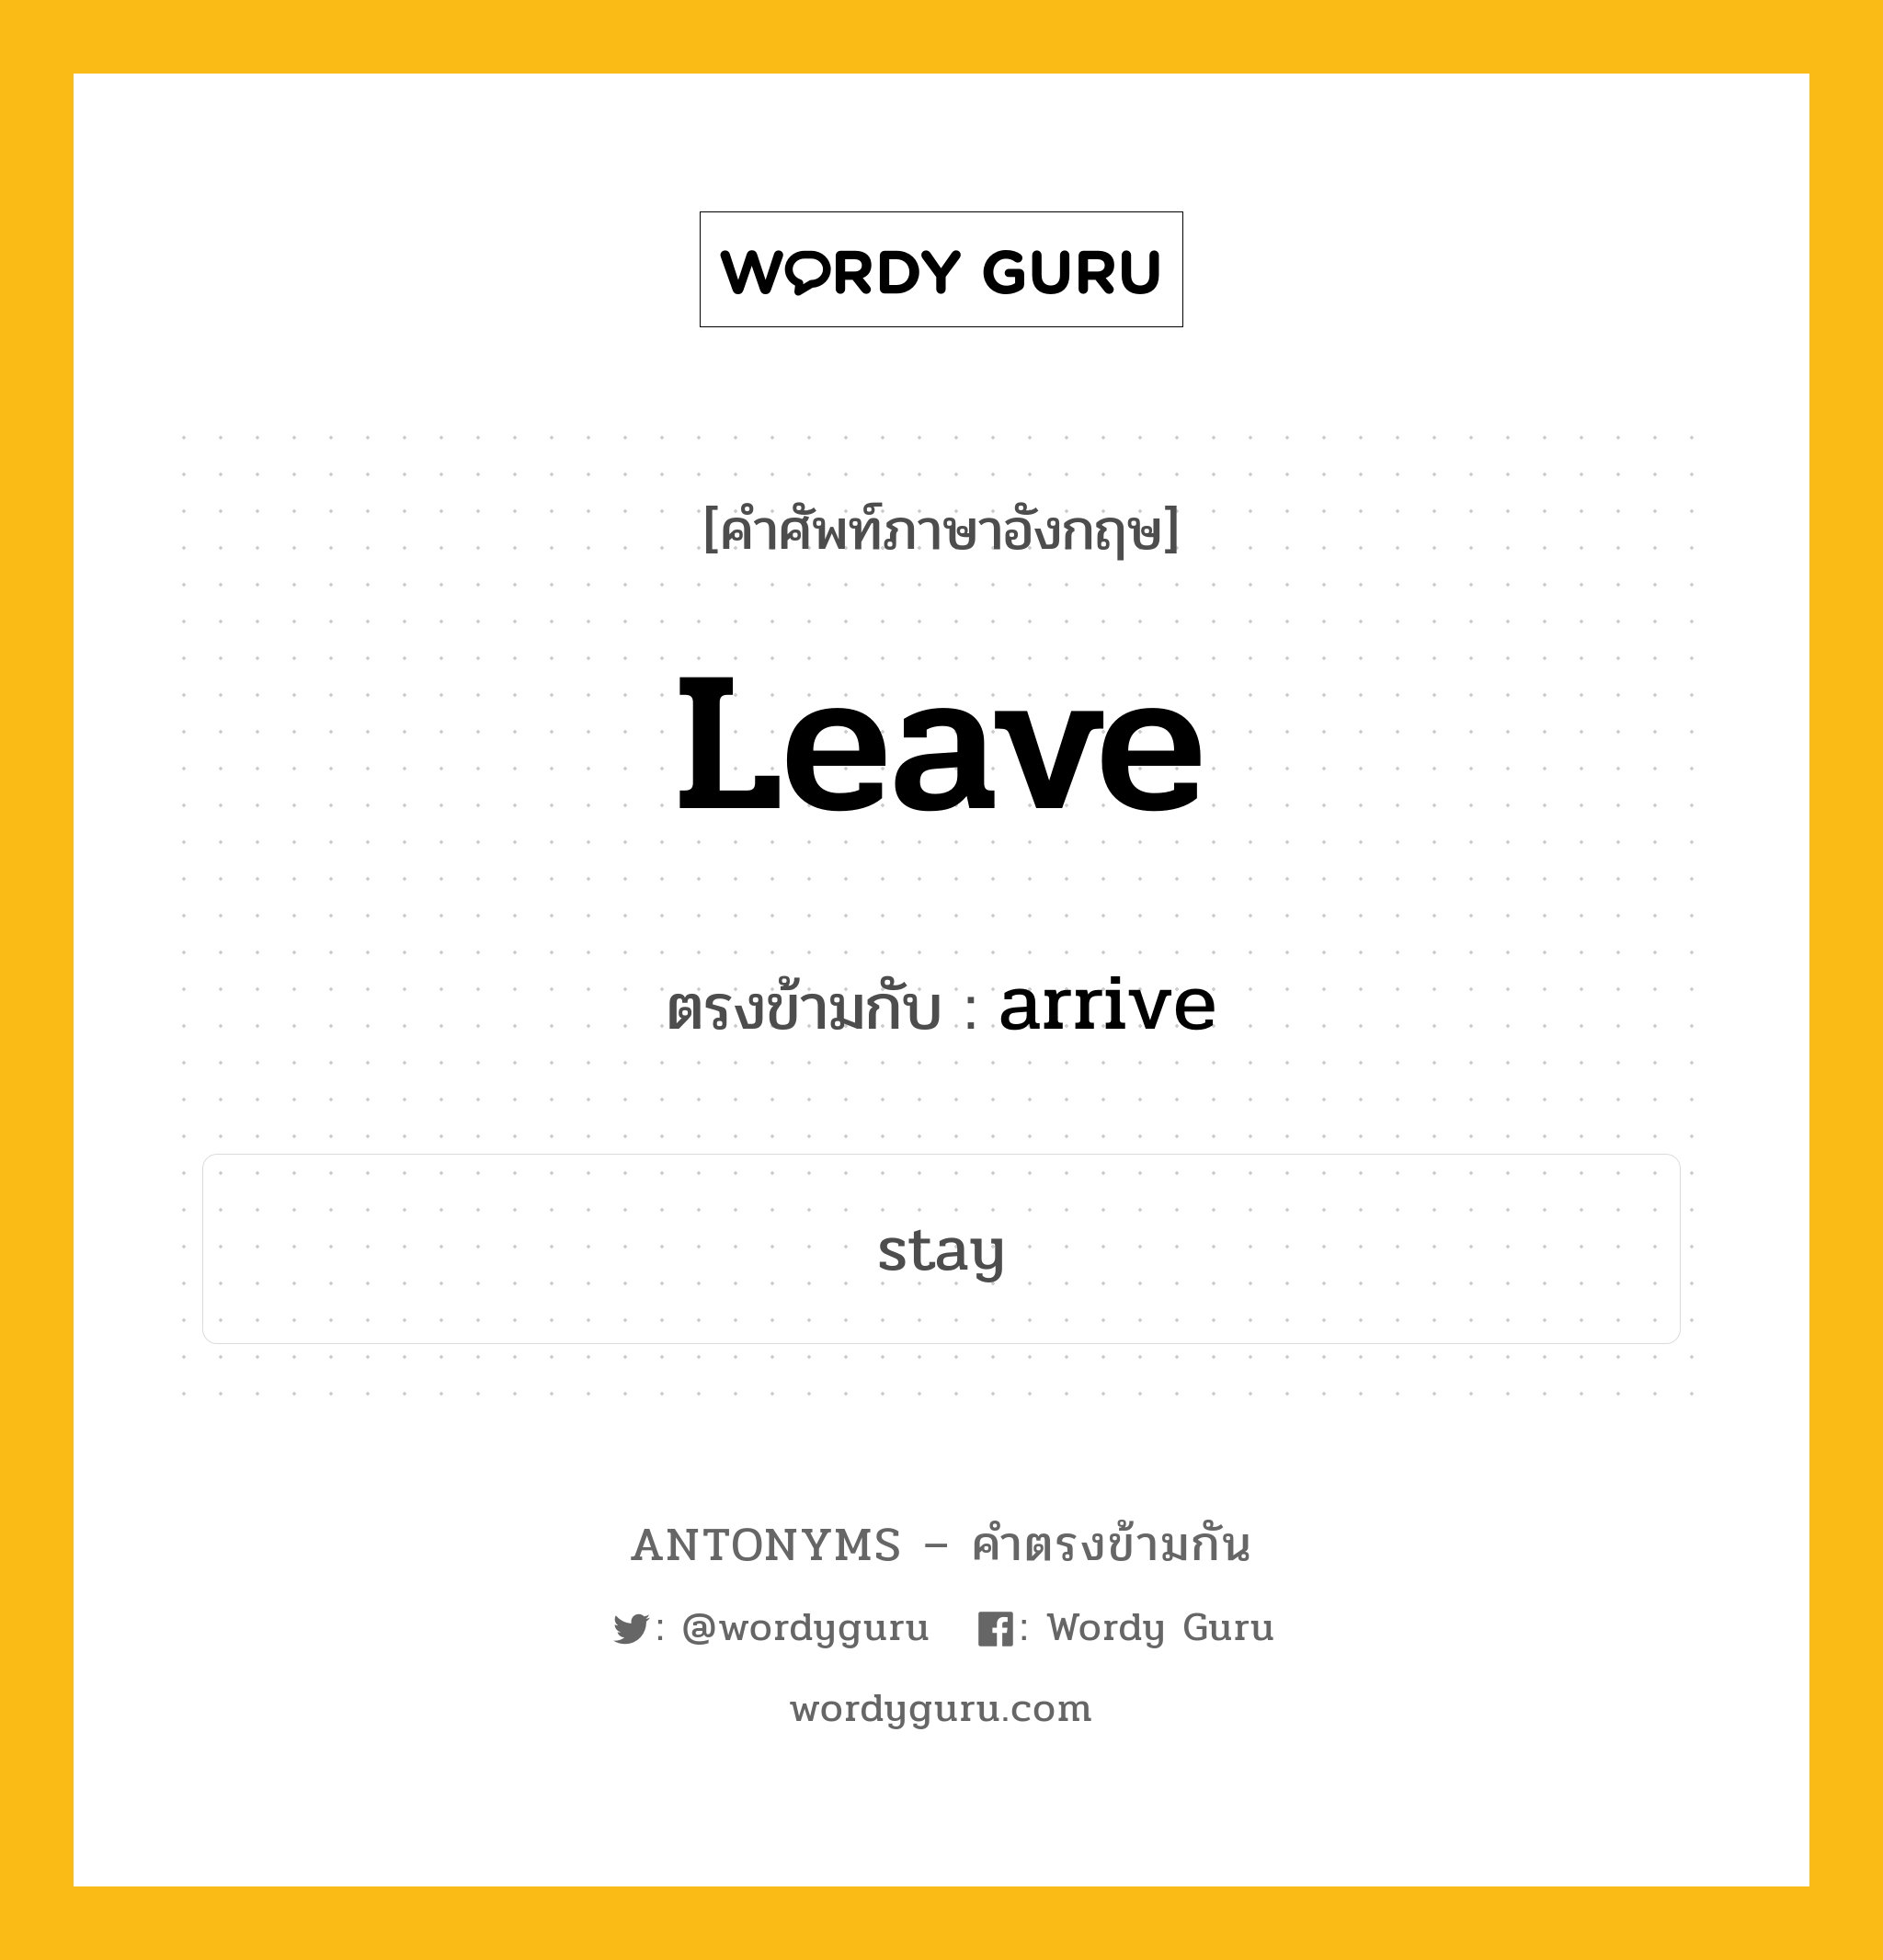 leave เป็นคำตรงข้ามกับคำไหนบ้าง?, คำศัพท์ภาษาอังกฤษ leave ตรงข้ามกับ arrive หมวด arrive